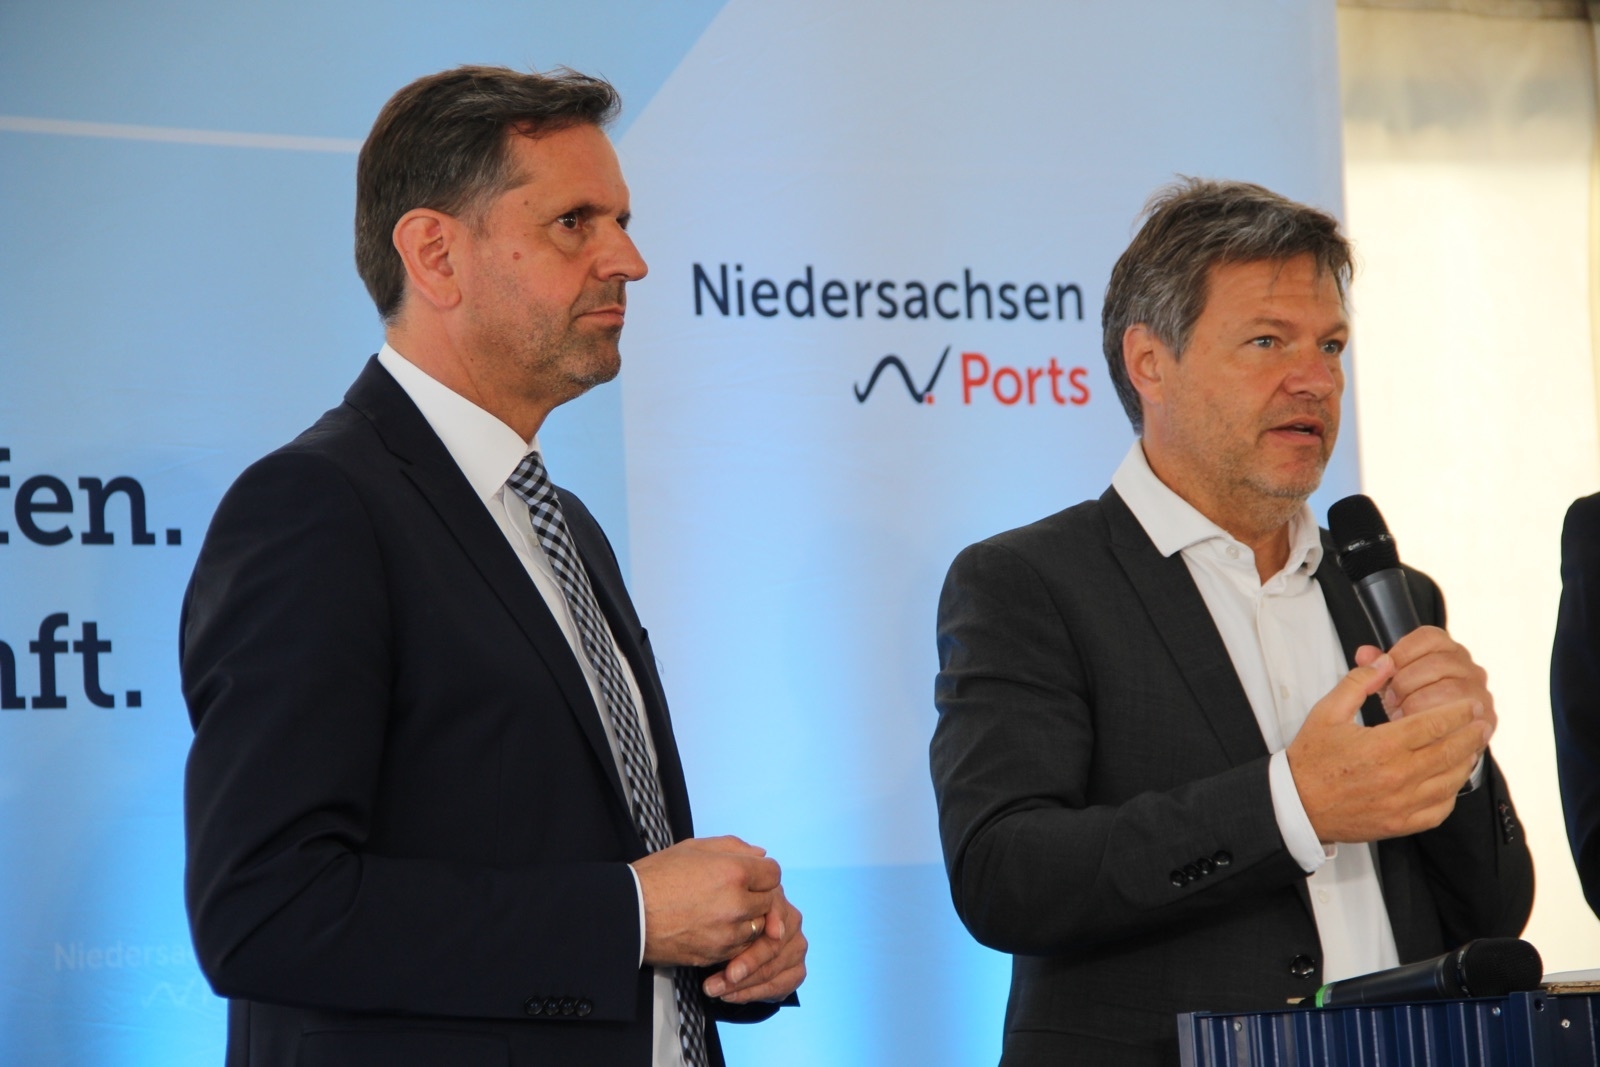 Minister Lies und Minister Habeck stehen an einem Rednerpult, im Hintergrund sieht man das Logo Niedersachsen Ports